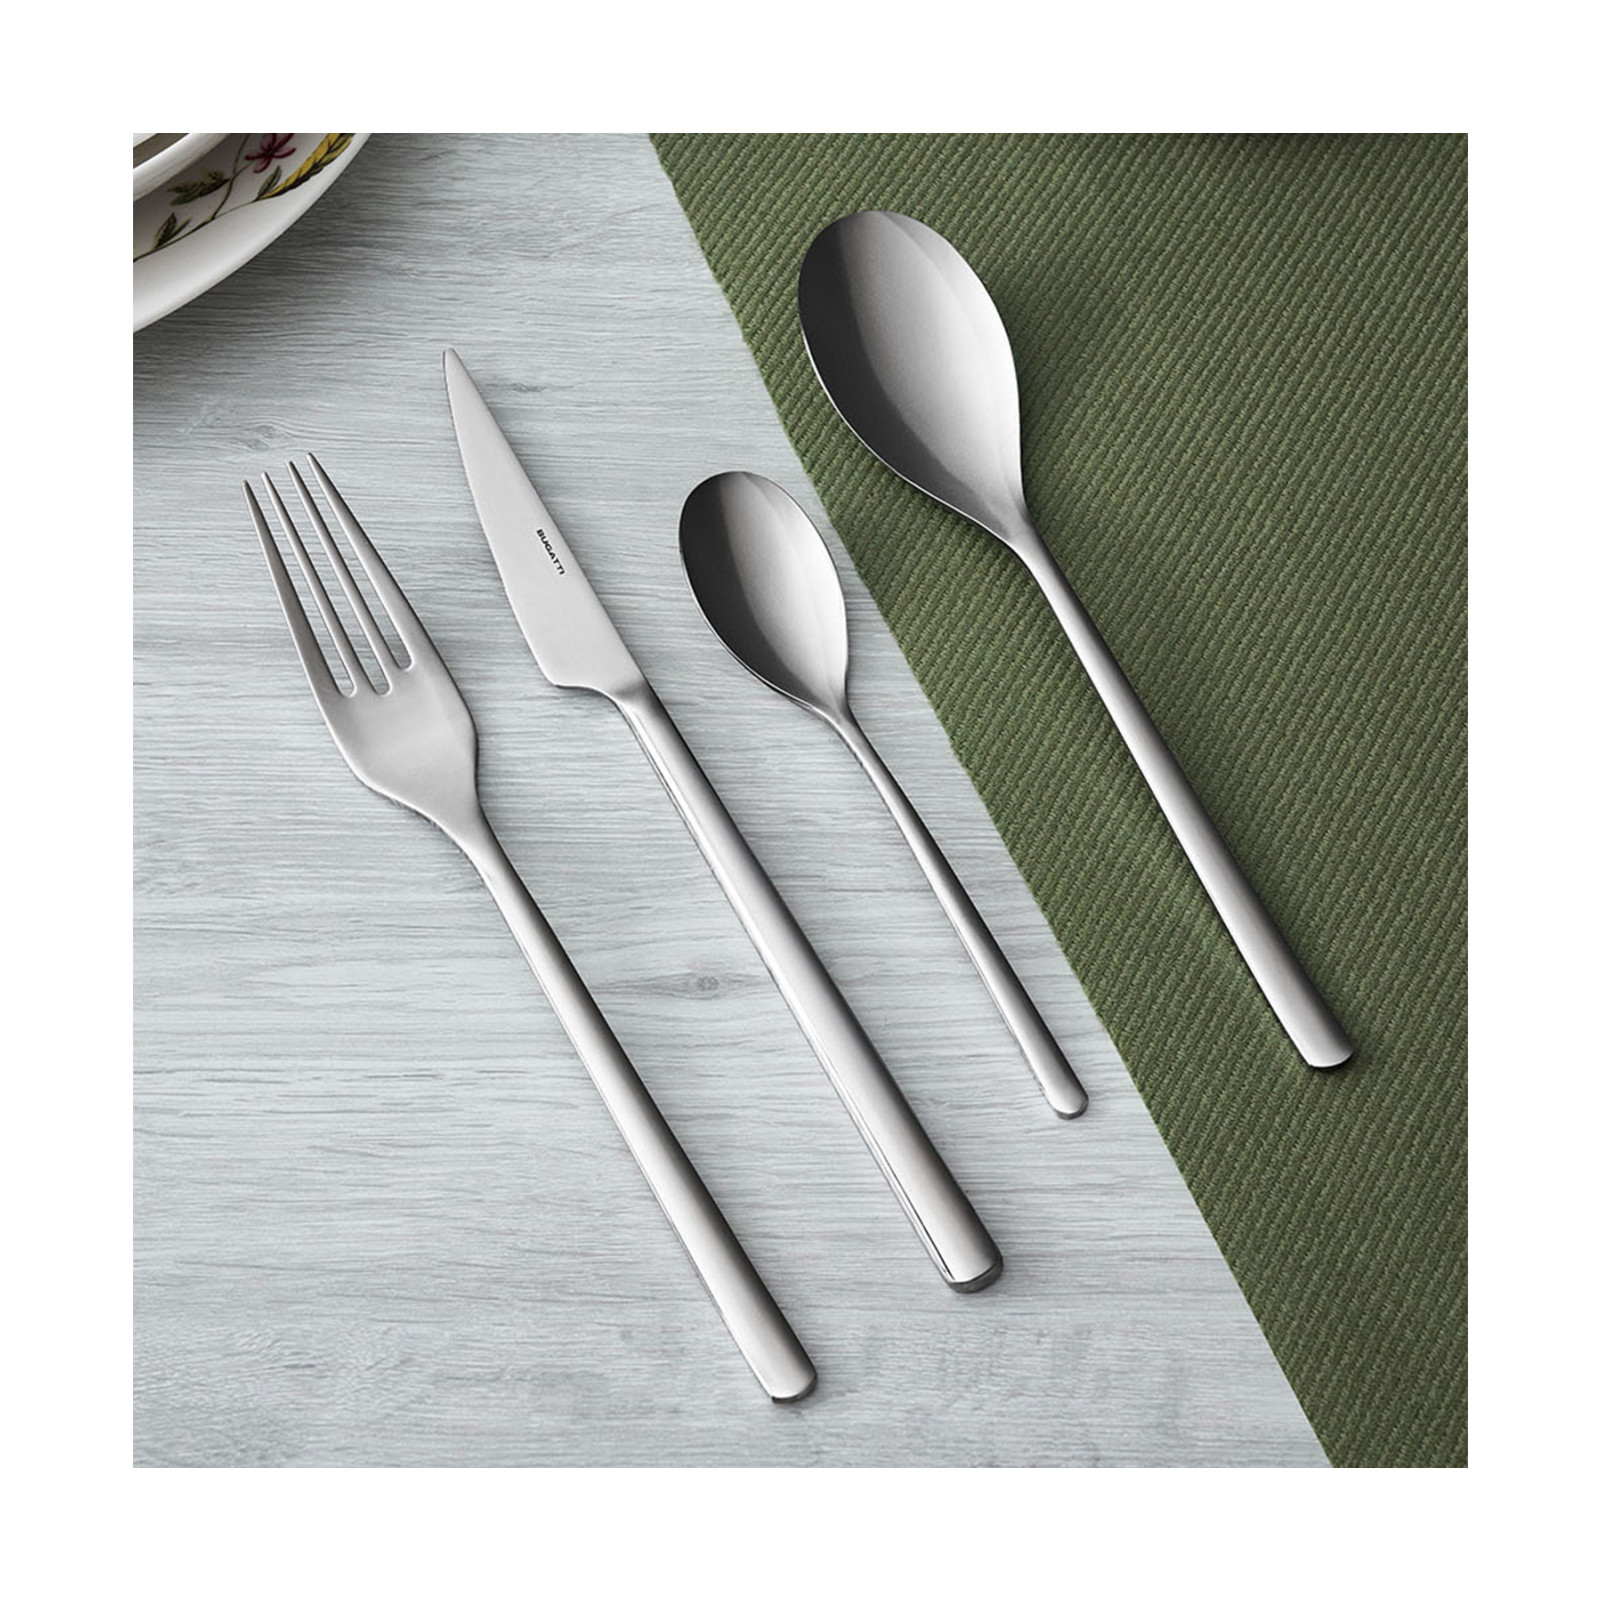 Bugatti - home and kitchen accessories small cutlery, Designer appliances